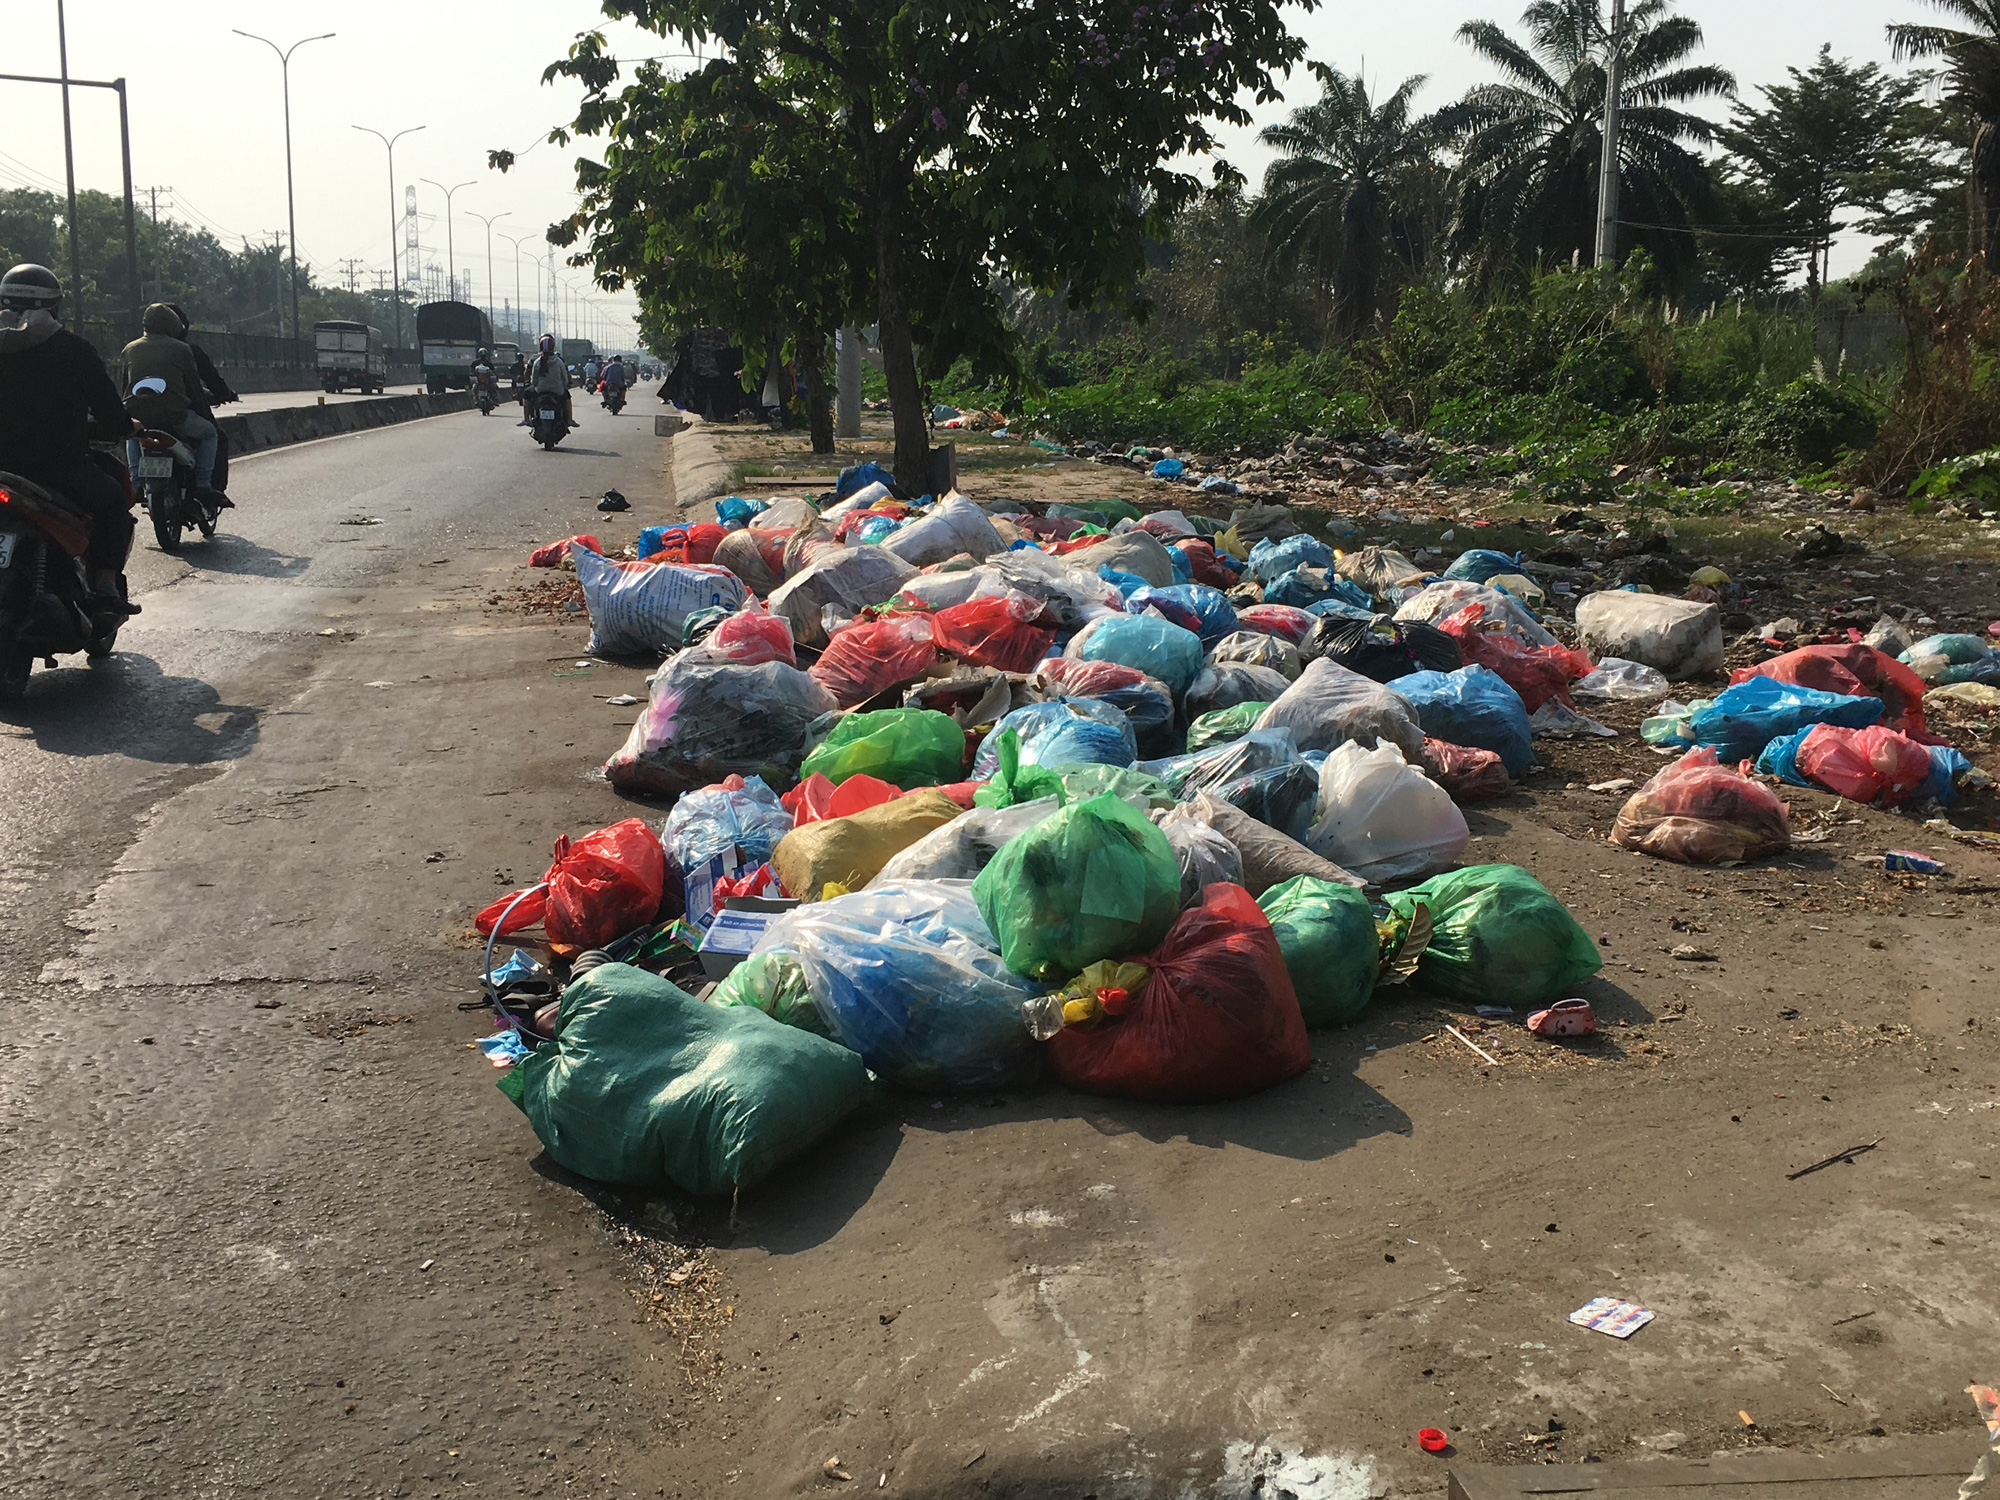 Kinh khủng bãi rác tự phát ở quận Bình Tân - TP HCM - Ảnh 2.